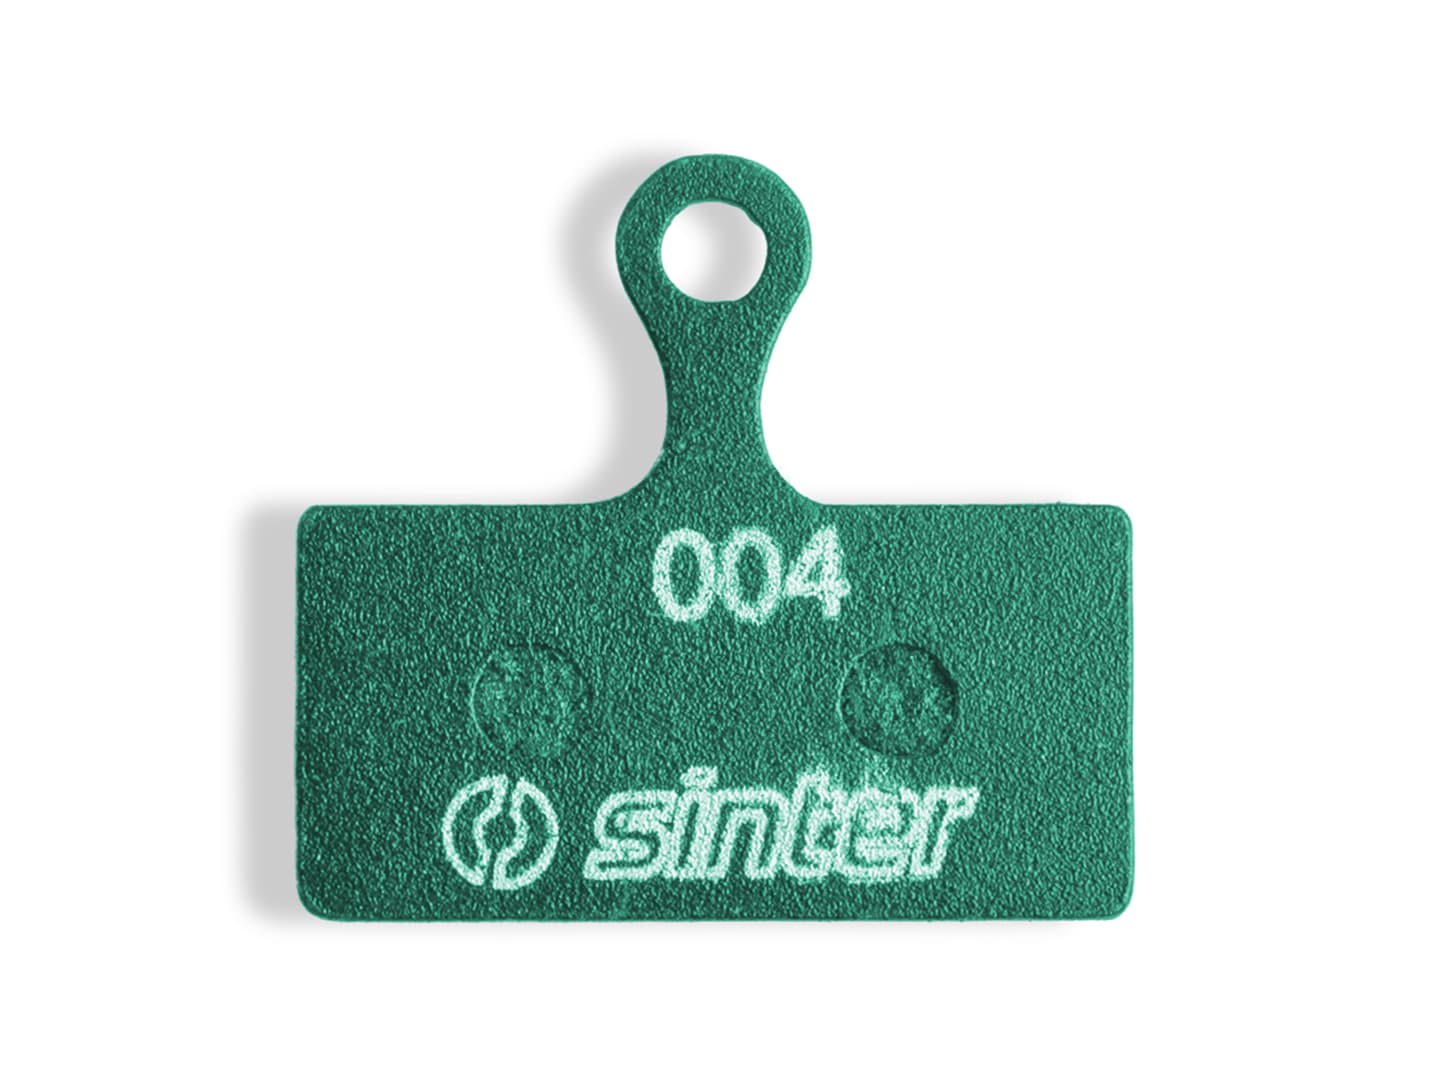 Sinter Standard Compound Disc Brake Pads-Green